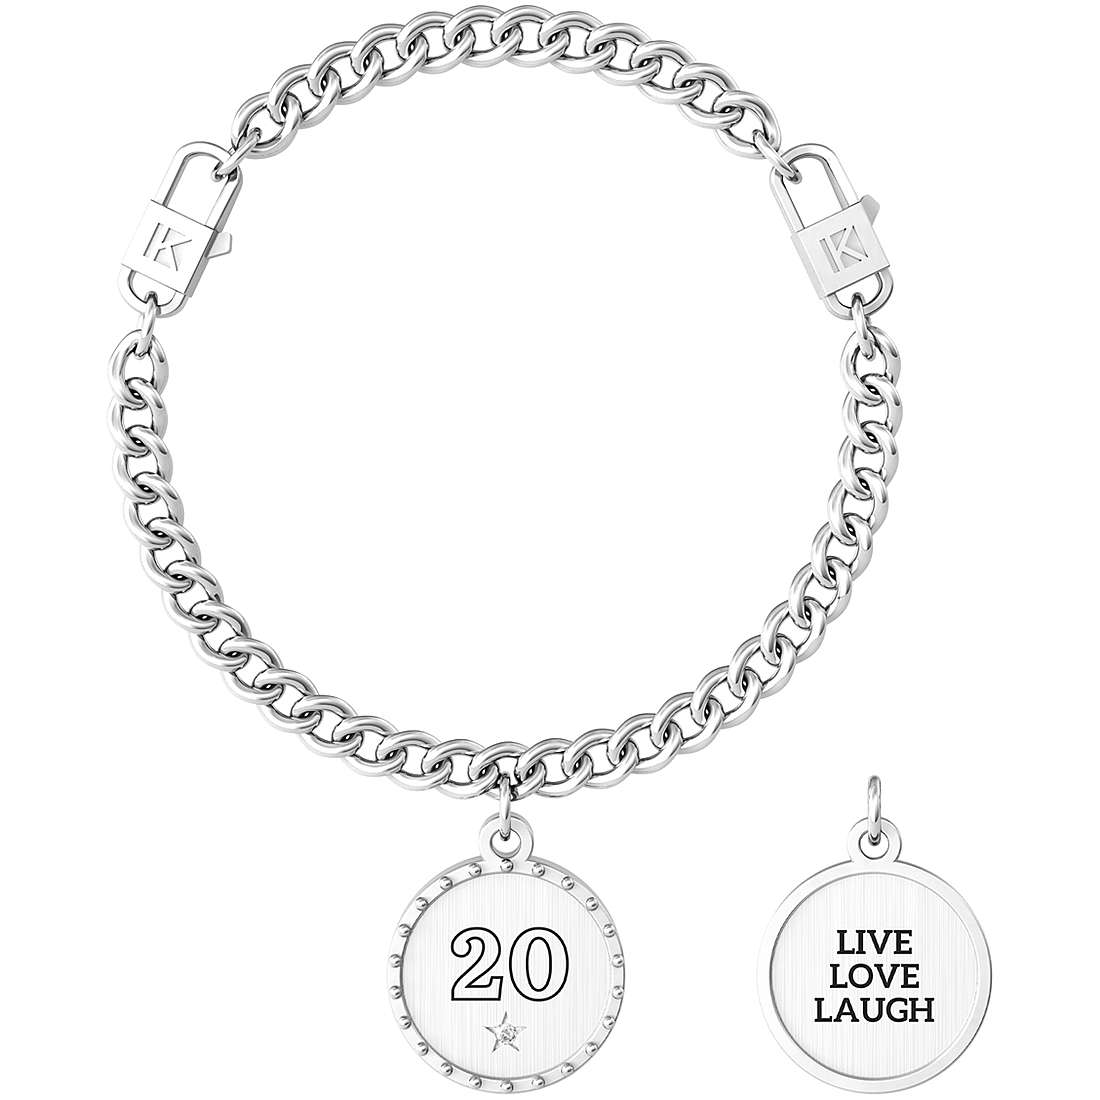 Bracelet Kidult Femme Collection Moments Spéciaux - 20 | VIVRE AMOUR RIRE - 731950